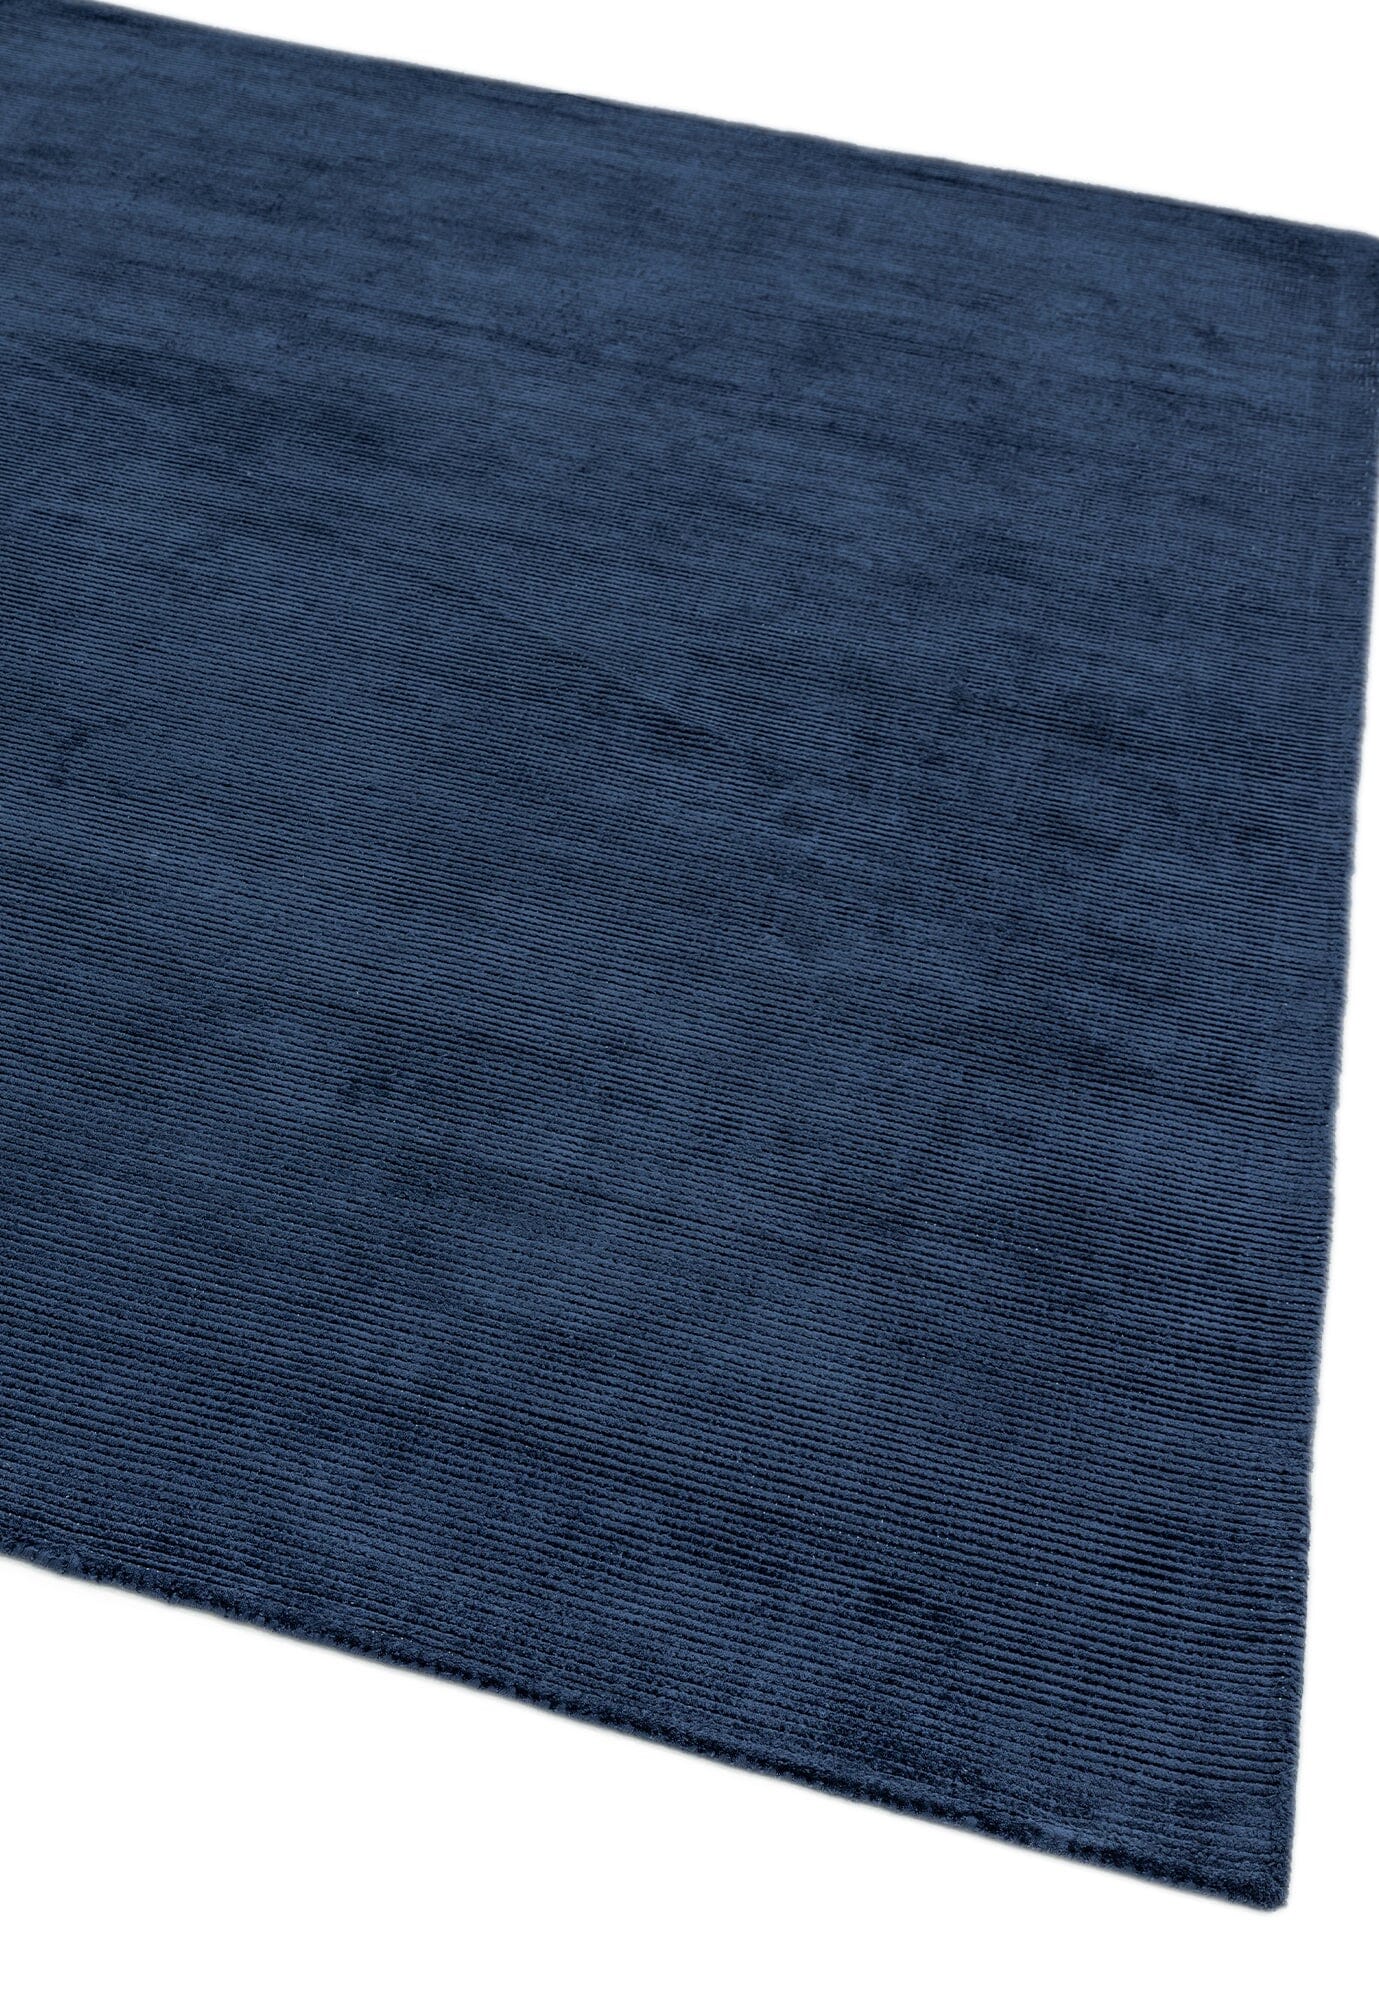 Asiatic Carpets Reko Hand Woven Rug Navy - 200 x 300cm